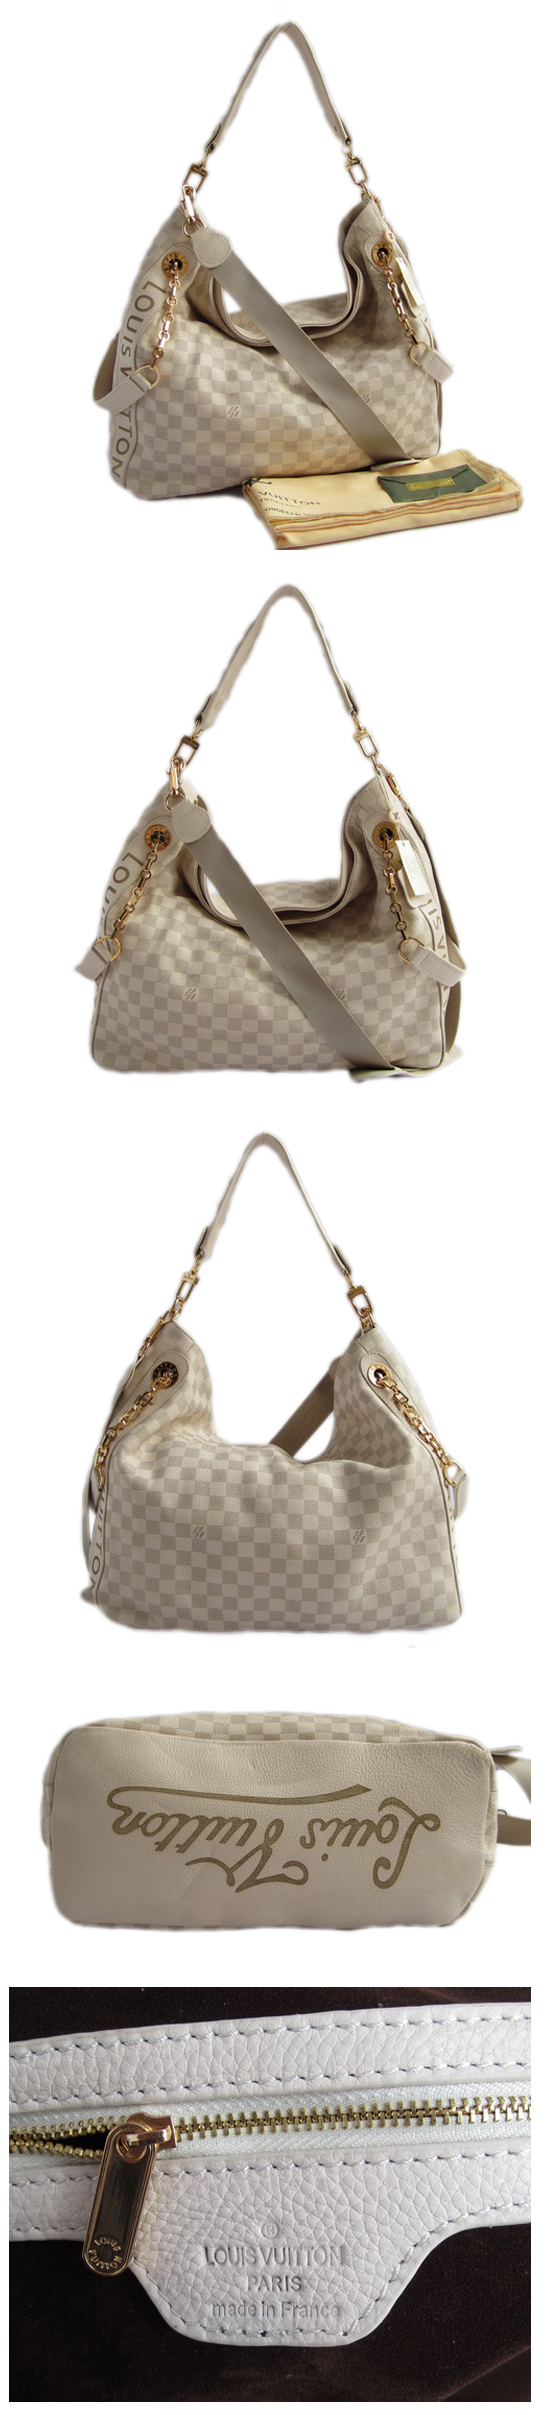 ブランド通販Louis Vuitton-ルイヴィトン-bag-N95006-beige激安屋-ブランドコピー